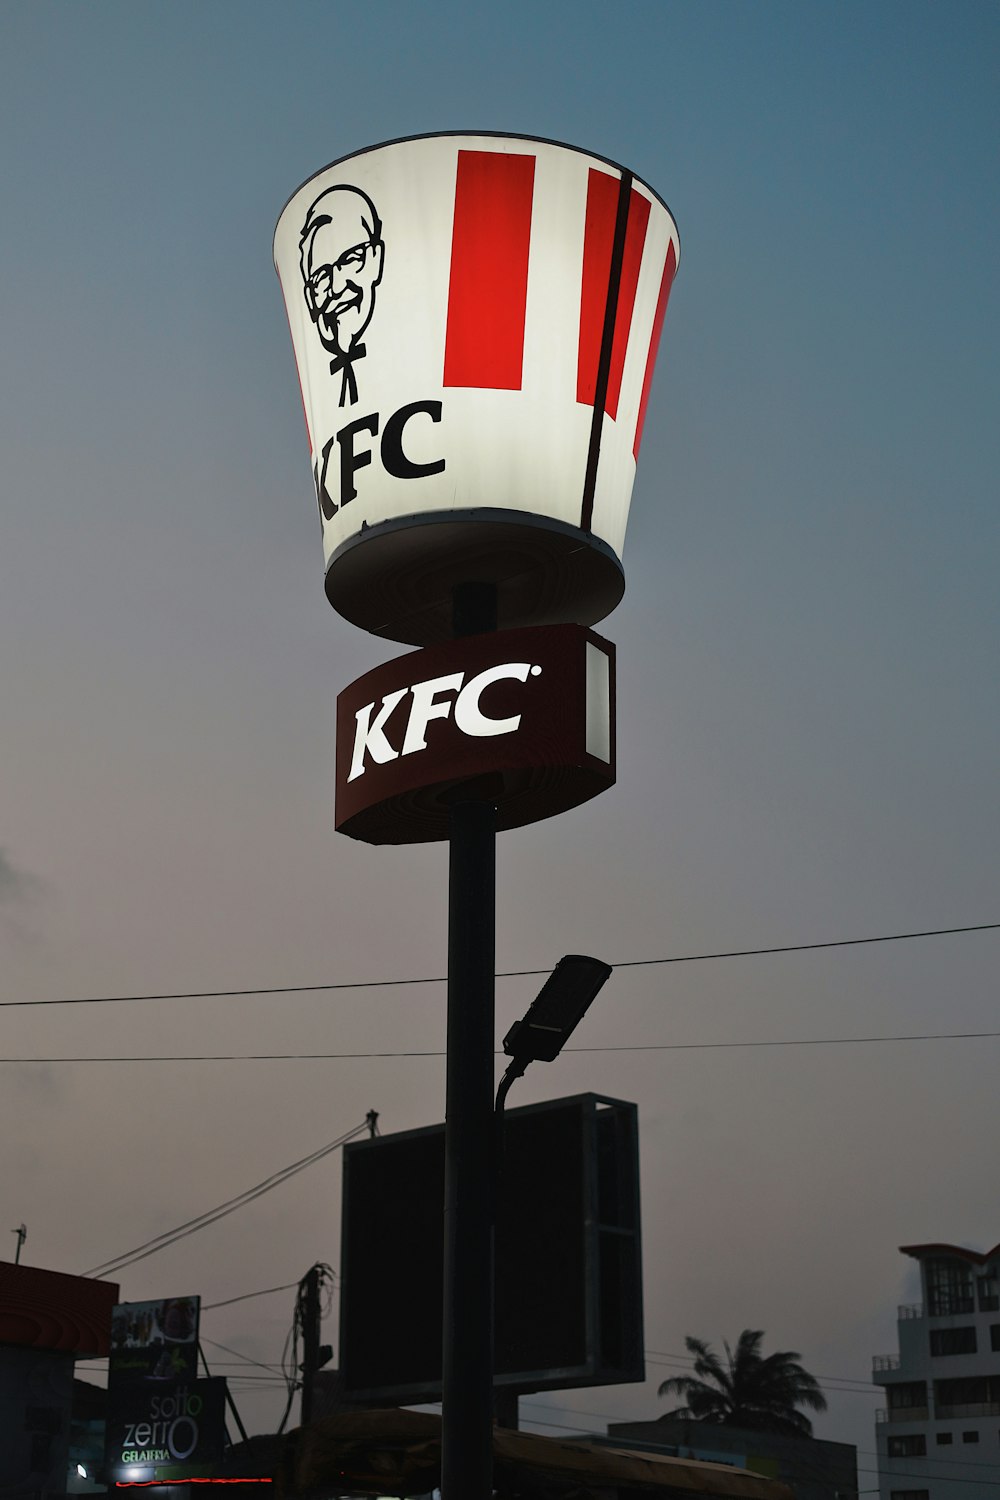 Un panneau KFC avec le visage d’un homme dessus